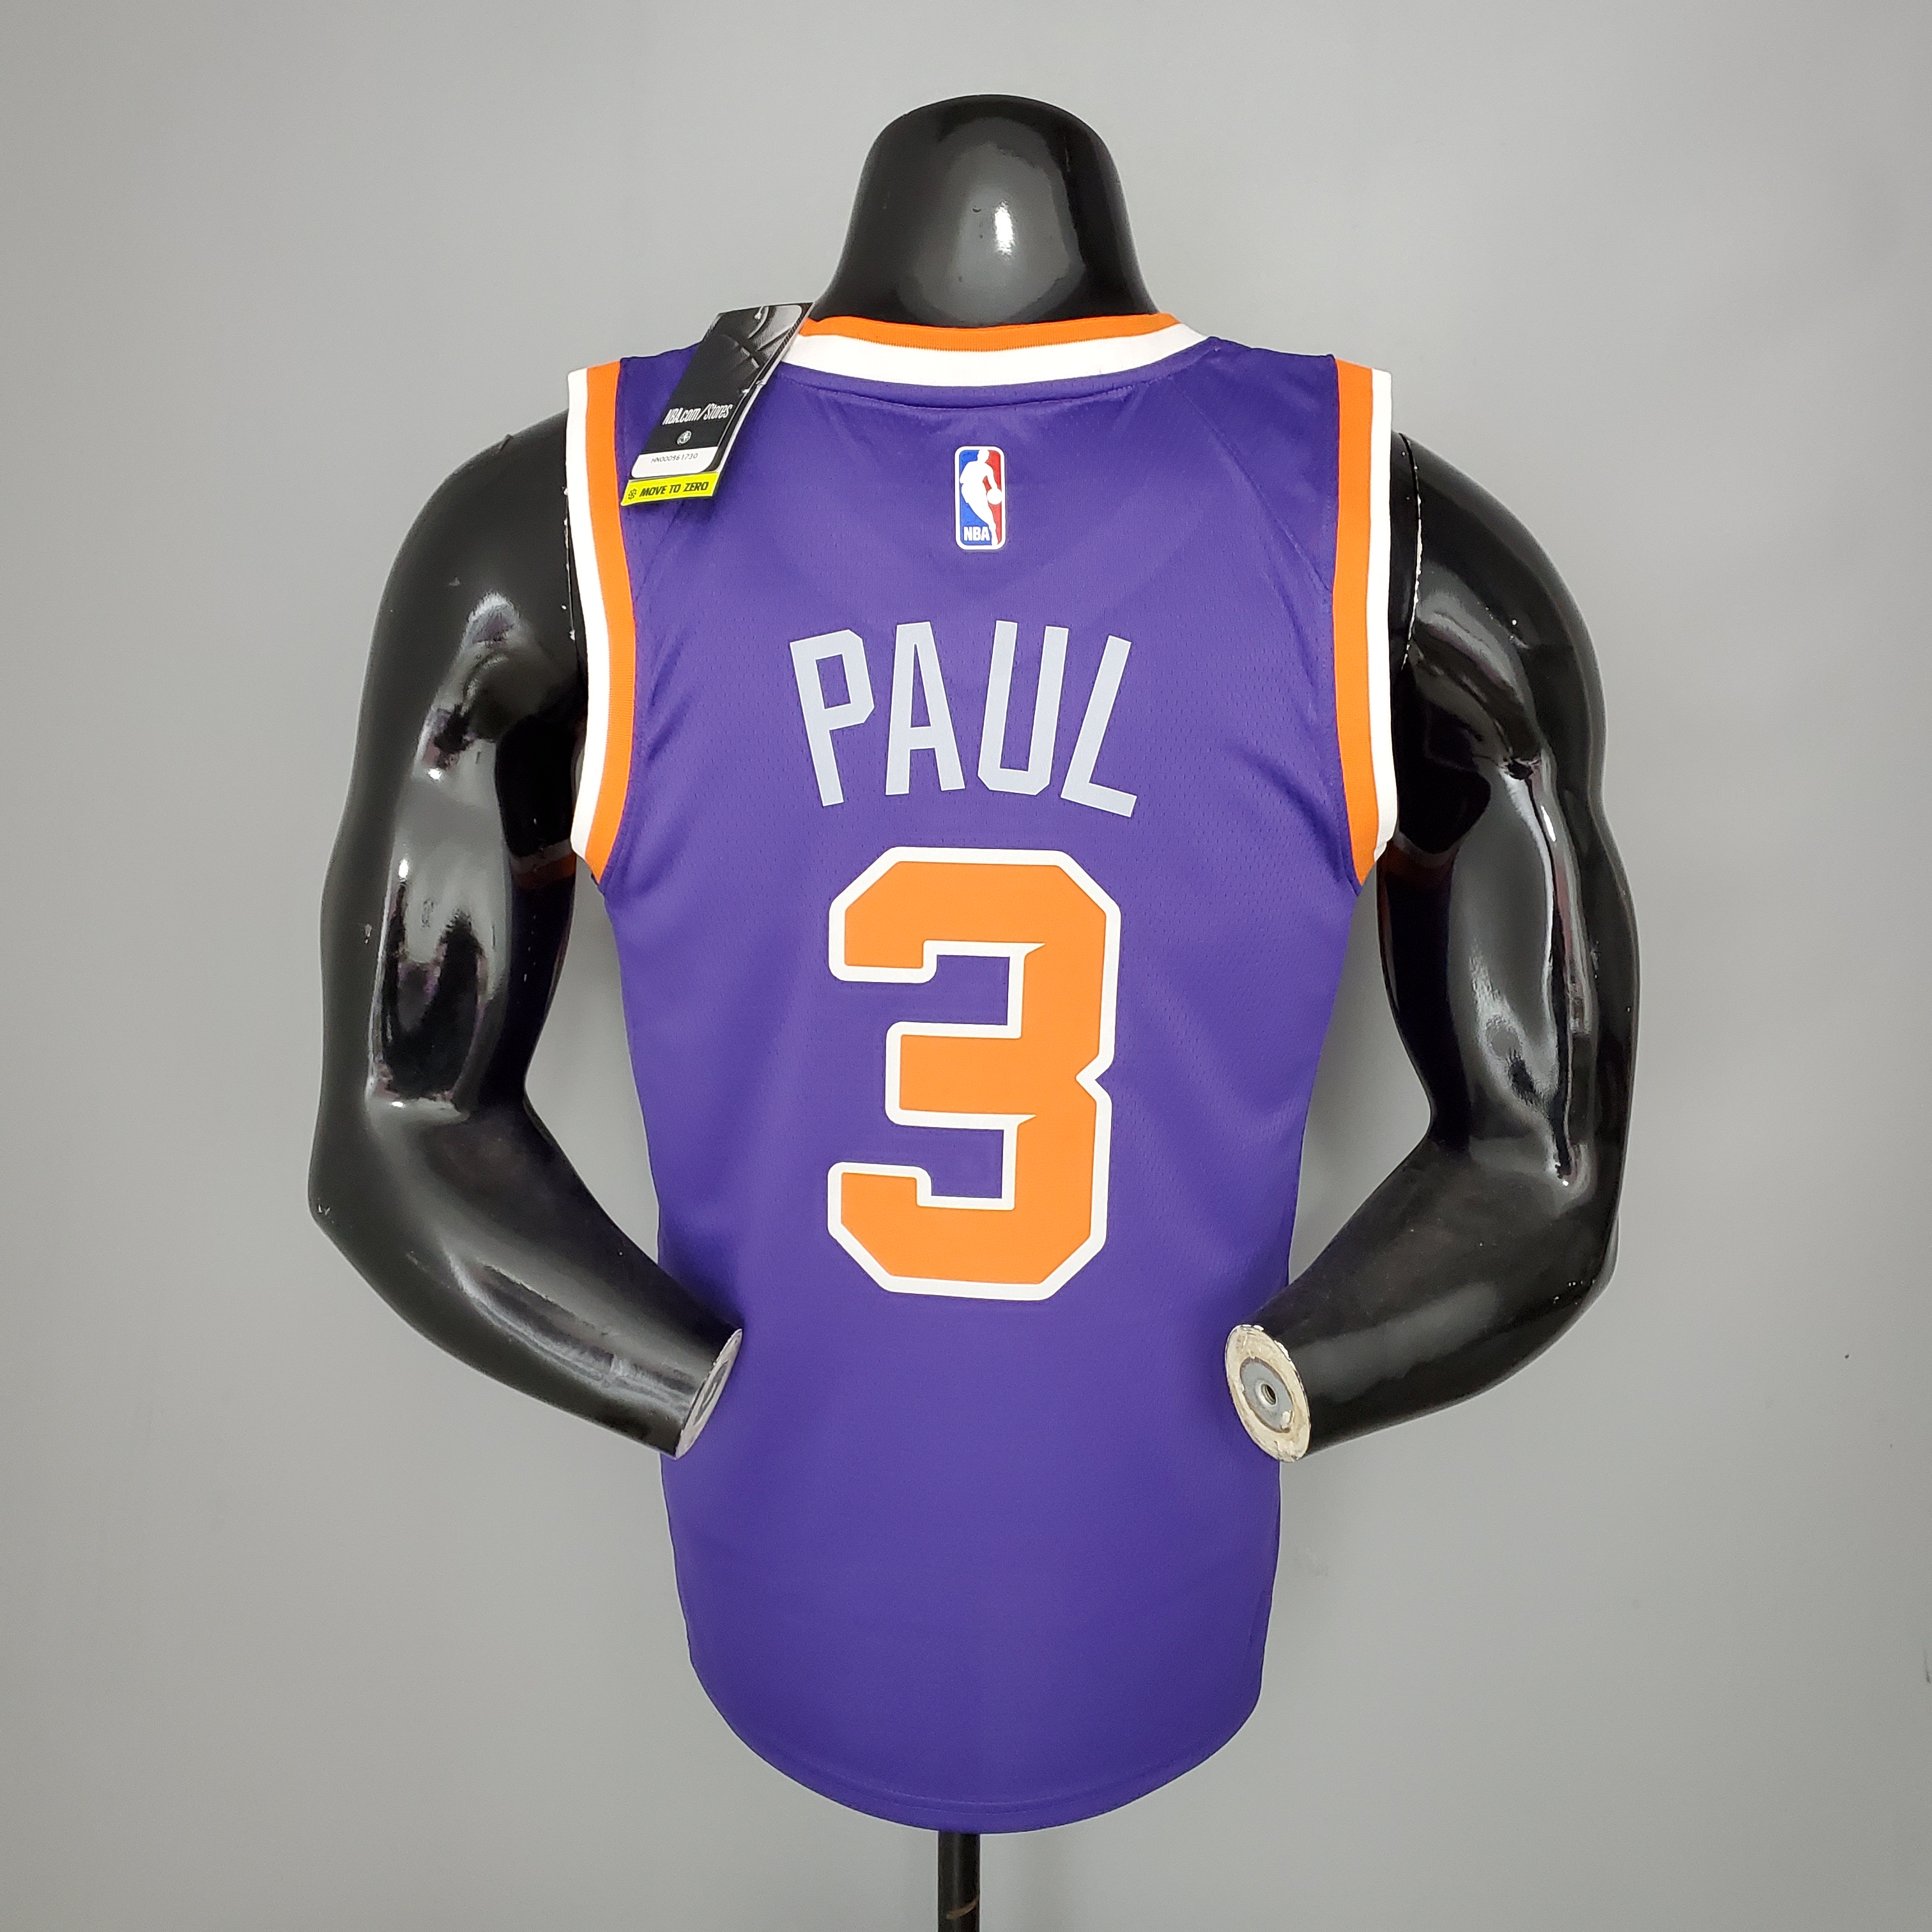 2021-2022 Earned Edition Phoenix Suns Purple #3 NBA Jersey,Phoenix